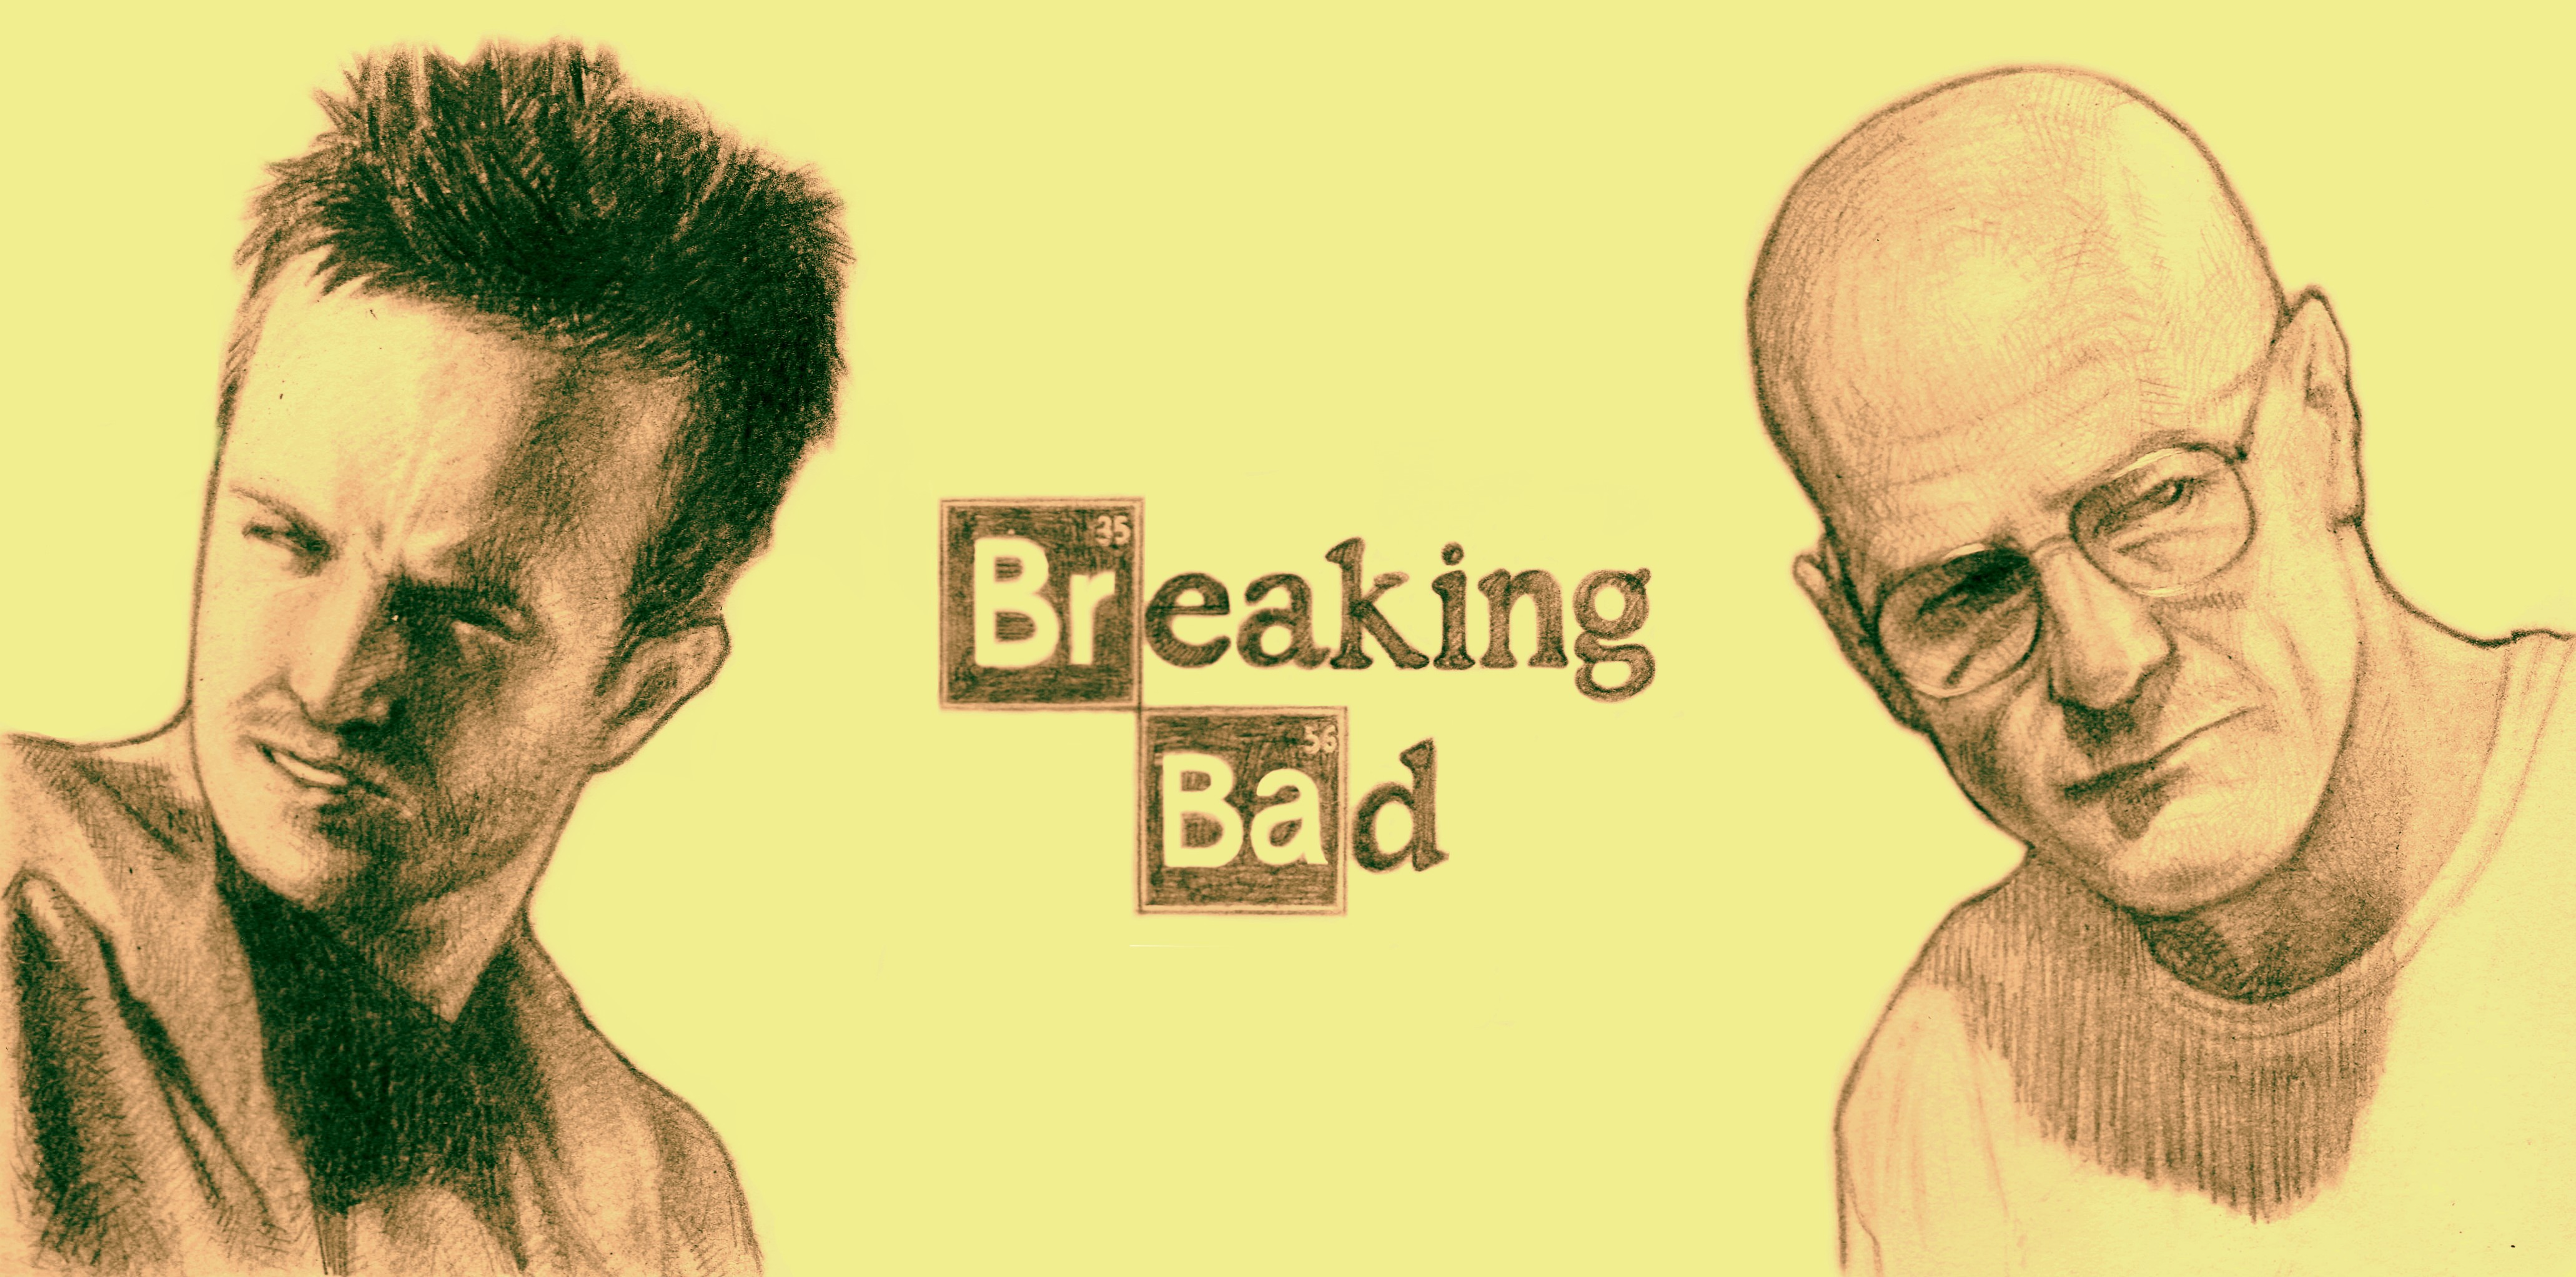 Bryan Cranston in 'Breaking Bad' by unknown artist